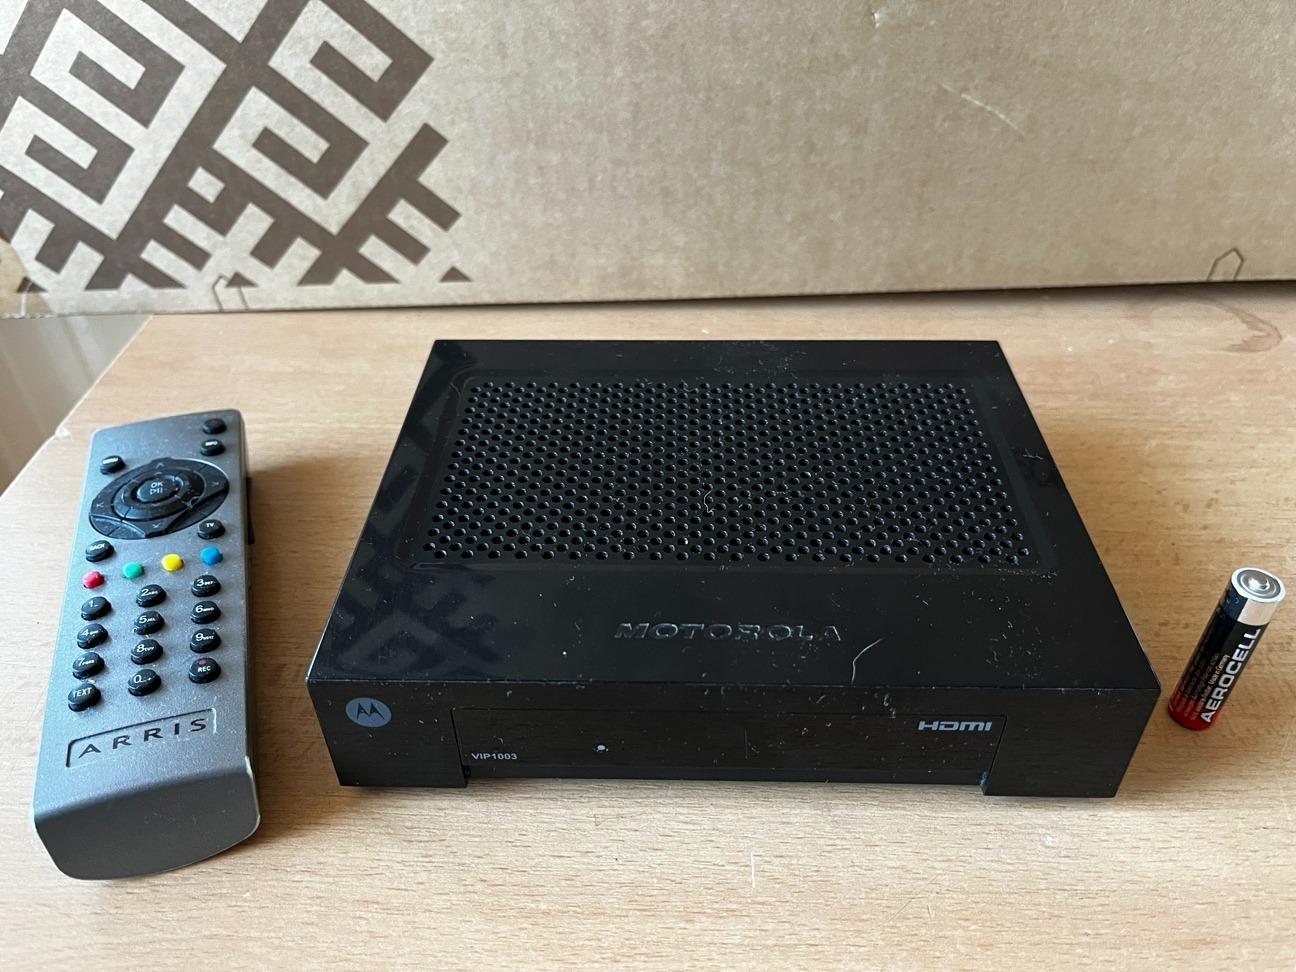 IPTV STB Motorola VIP1003, funkčný vrátane ovládača (Arris) a napájača - TV, audio, video